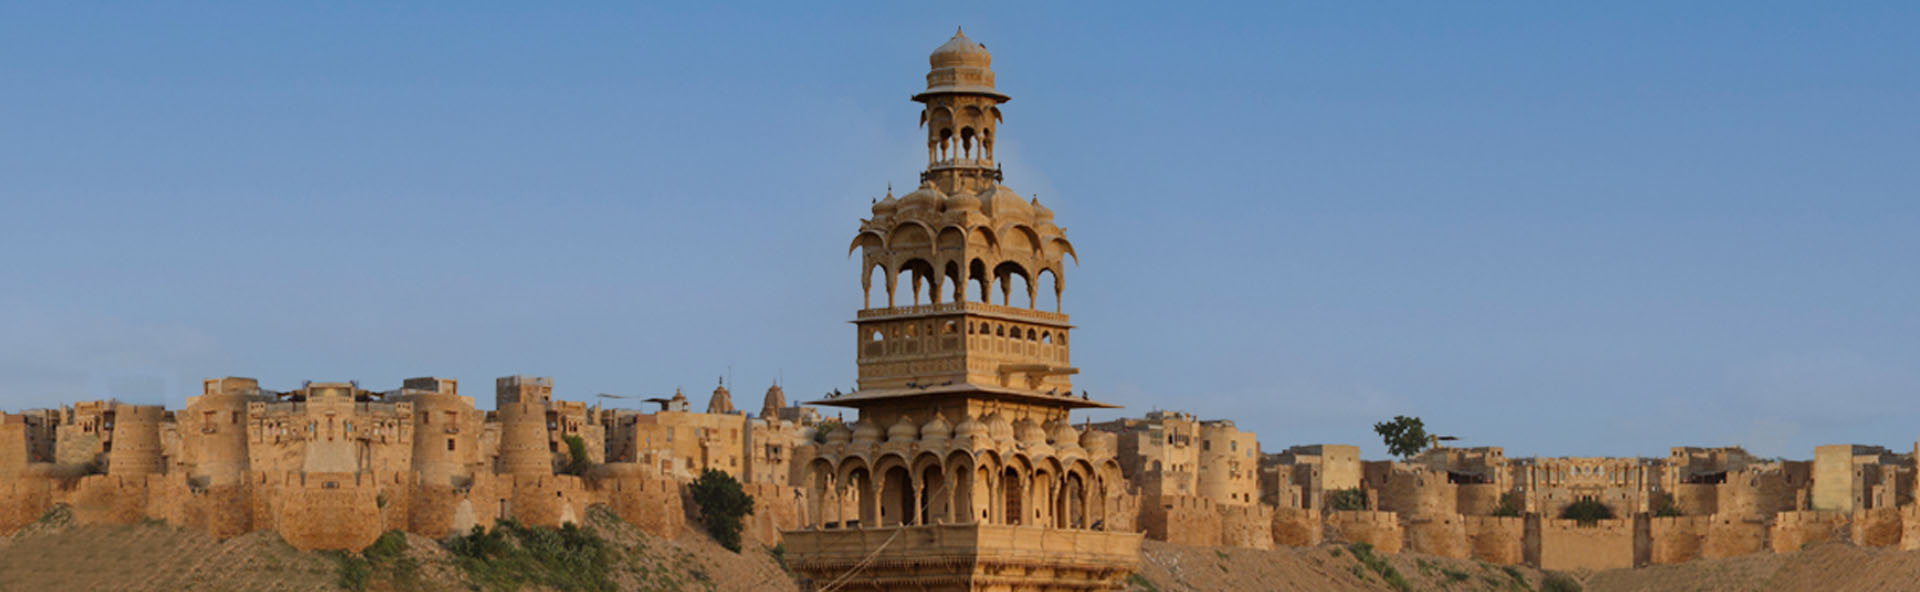 WH MANDIR PALACE WelcomHeritage Mandir Palace